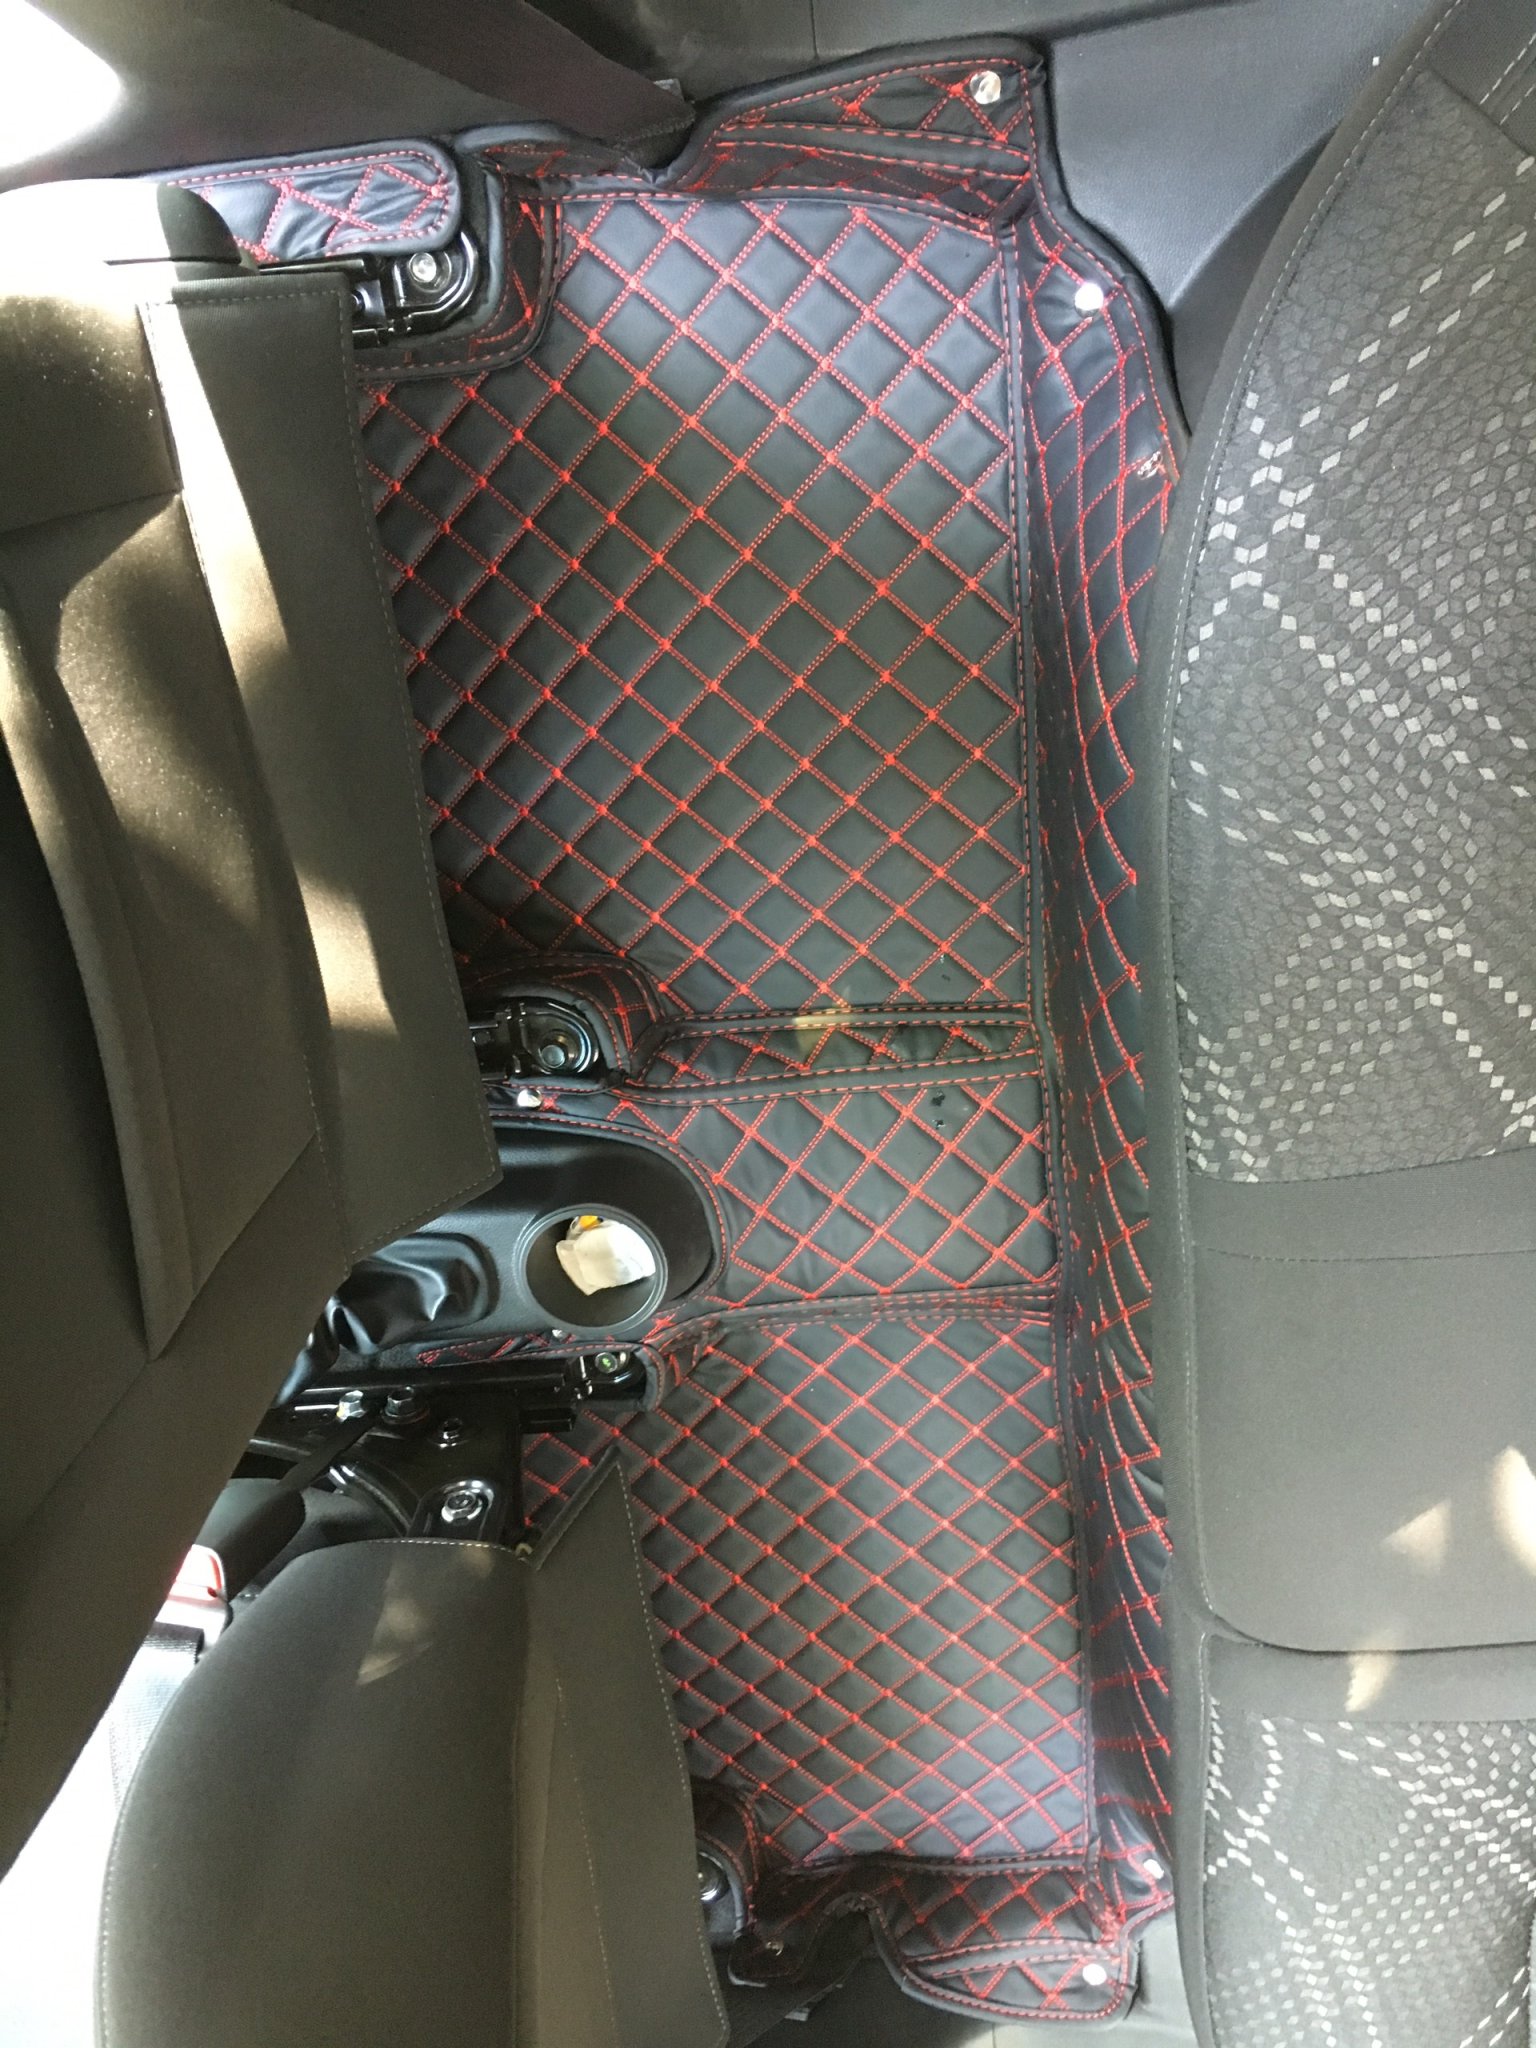 Thảm sàn ô tô 5D dành cho xe Chevrolet Spark 2017 da Thường màu T2.2 hình ảnh thật chụp bằng điện thoại không chỉnh sửa có video hướng dẫn lắp đặt tại nhà